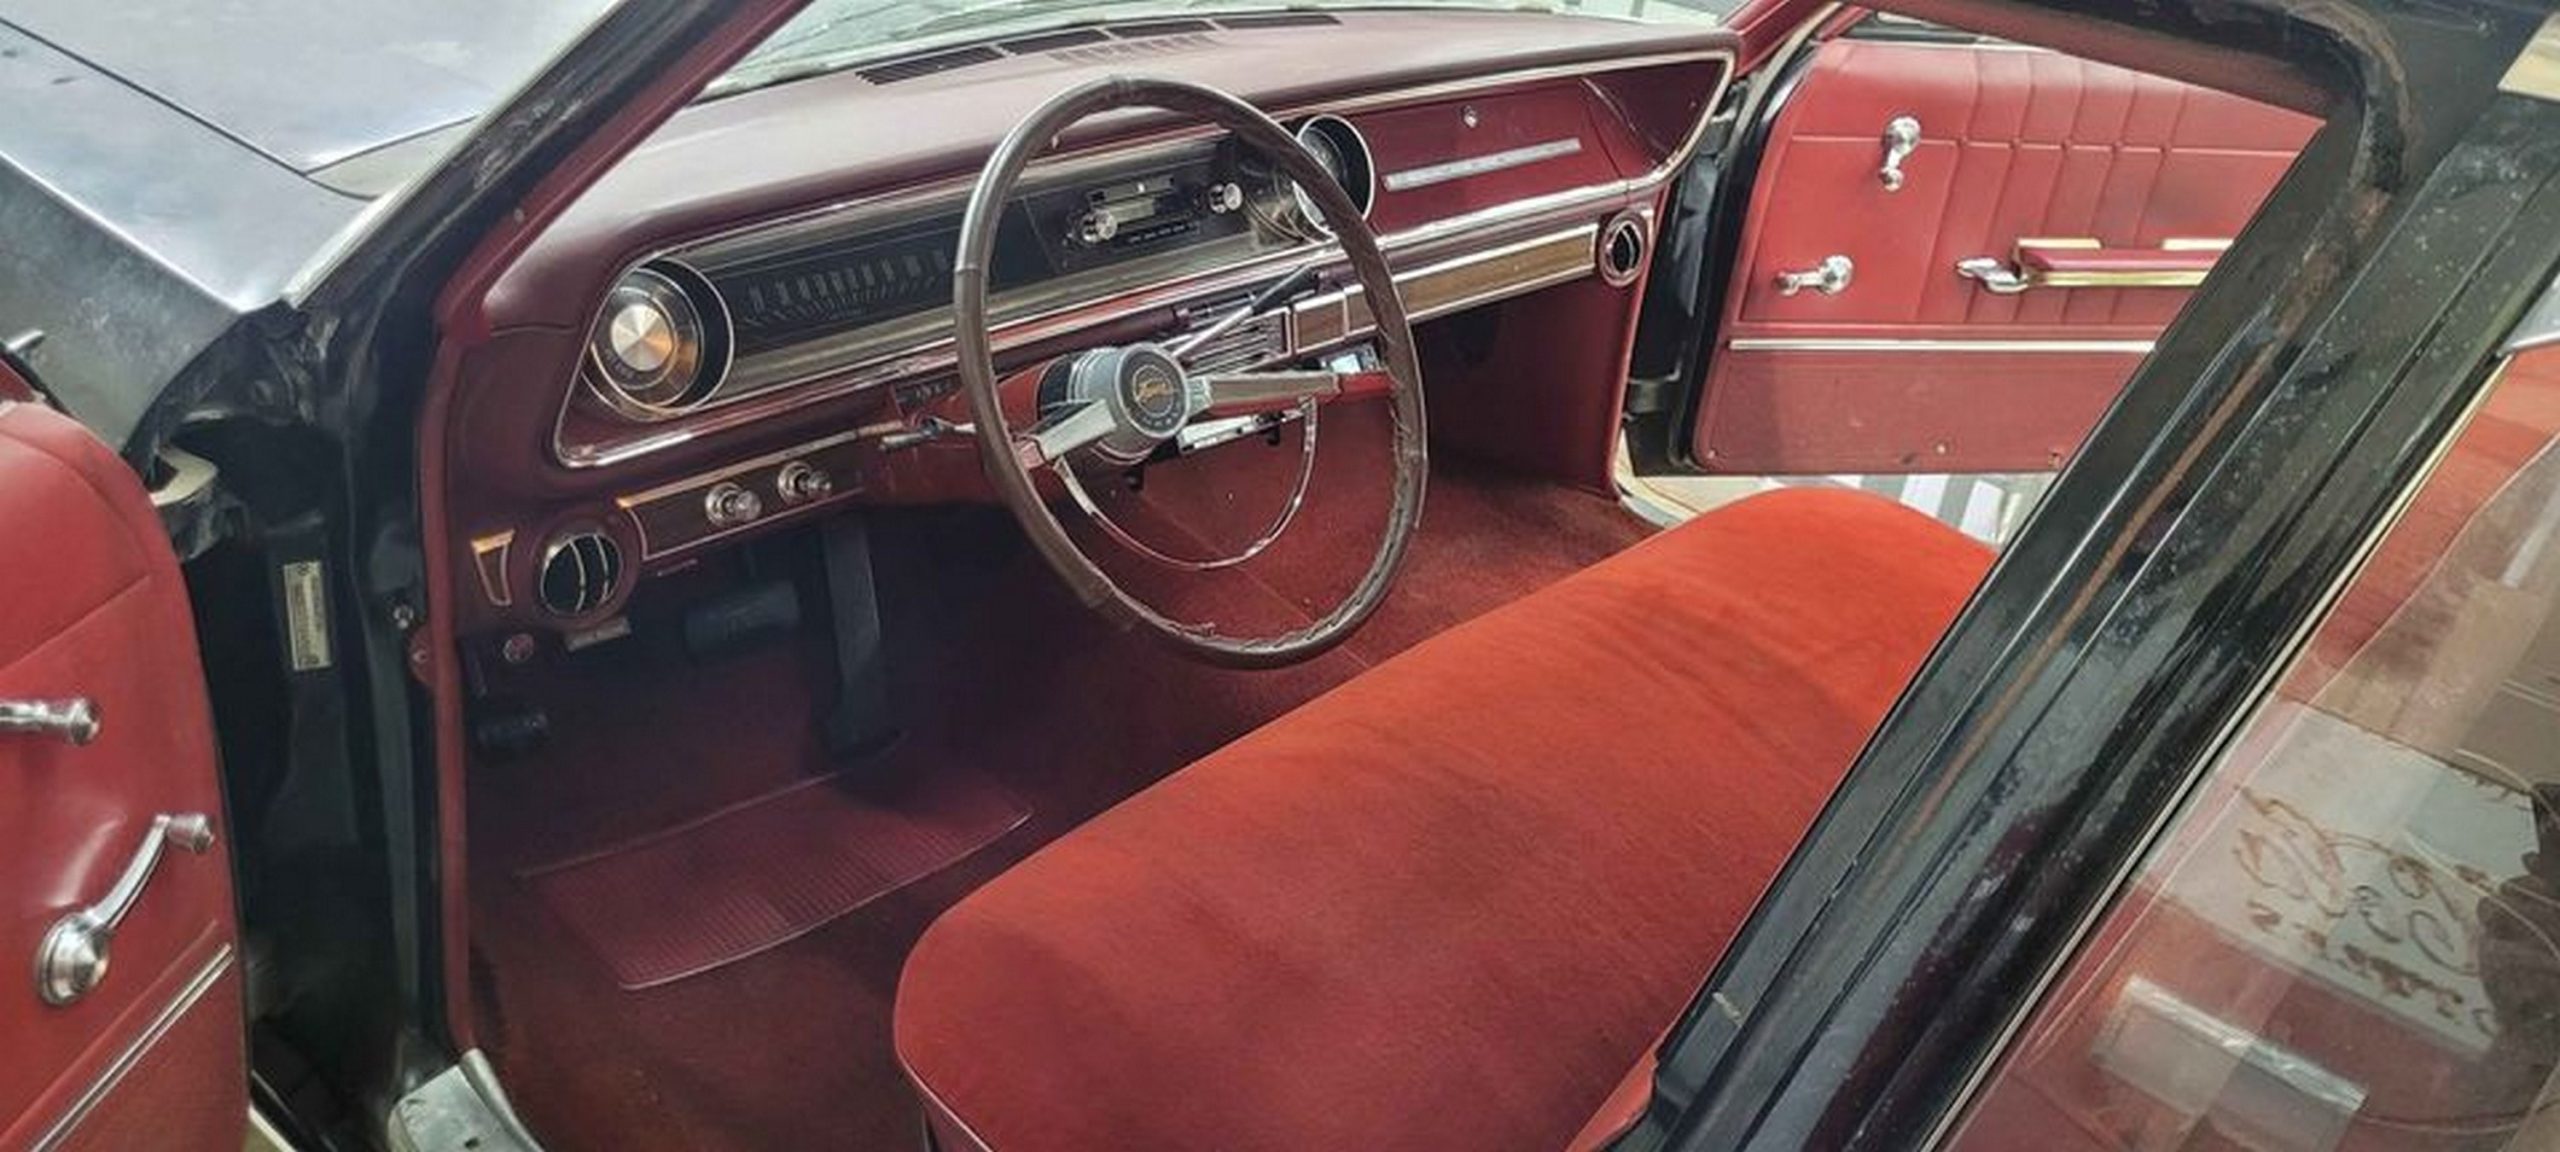 1965 Impala Wagon with Turbo-Jet V8